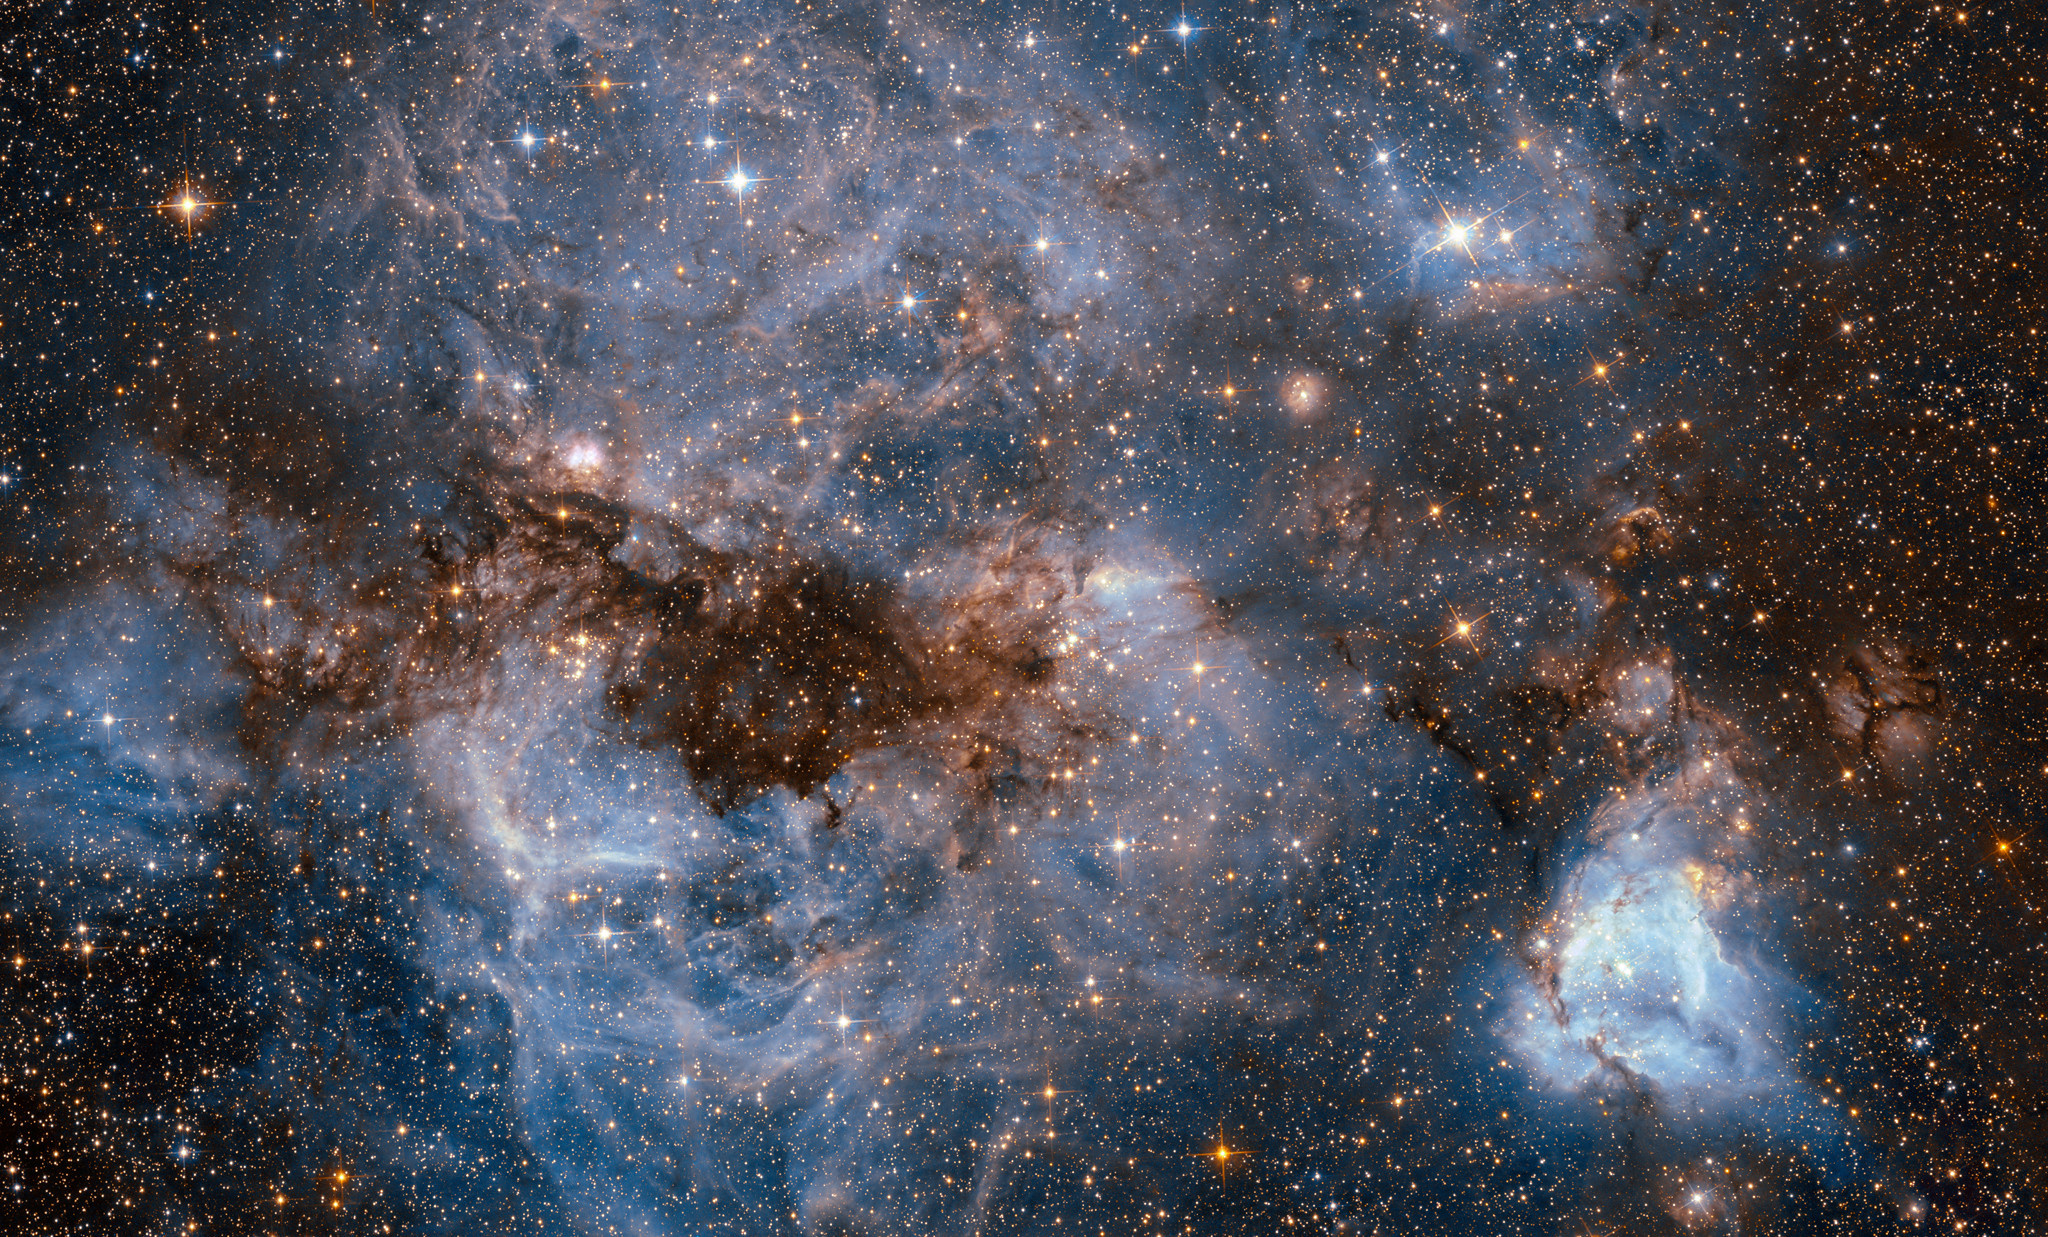 大麦哲伦云的n159,跨度约为150光年,位于大麦哲伦云内蜘蛛星云南侧